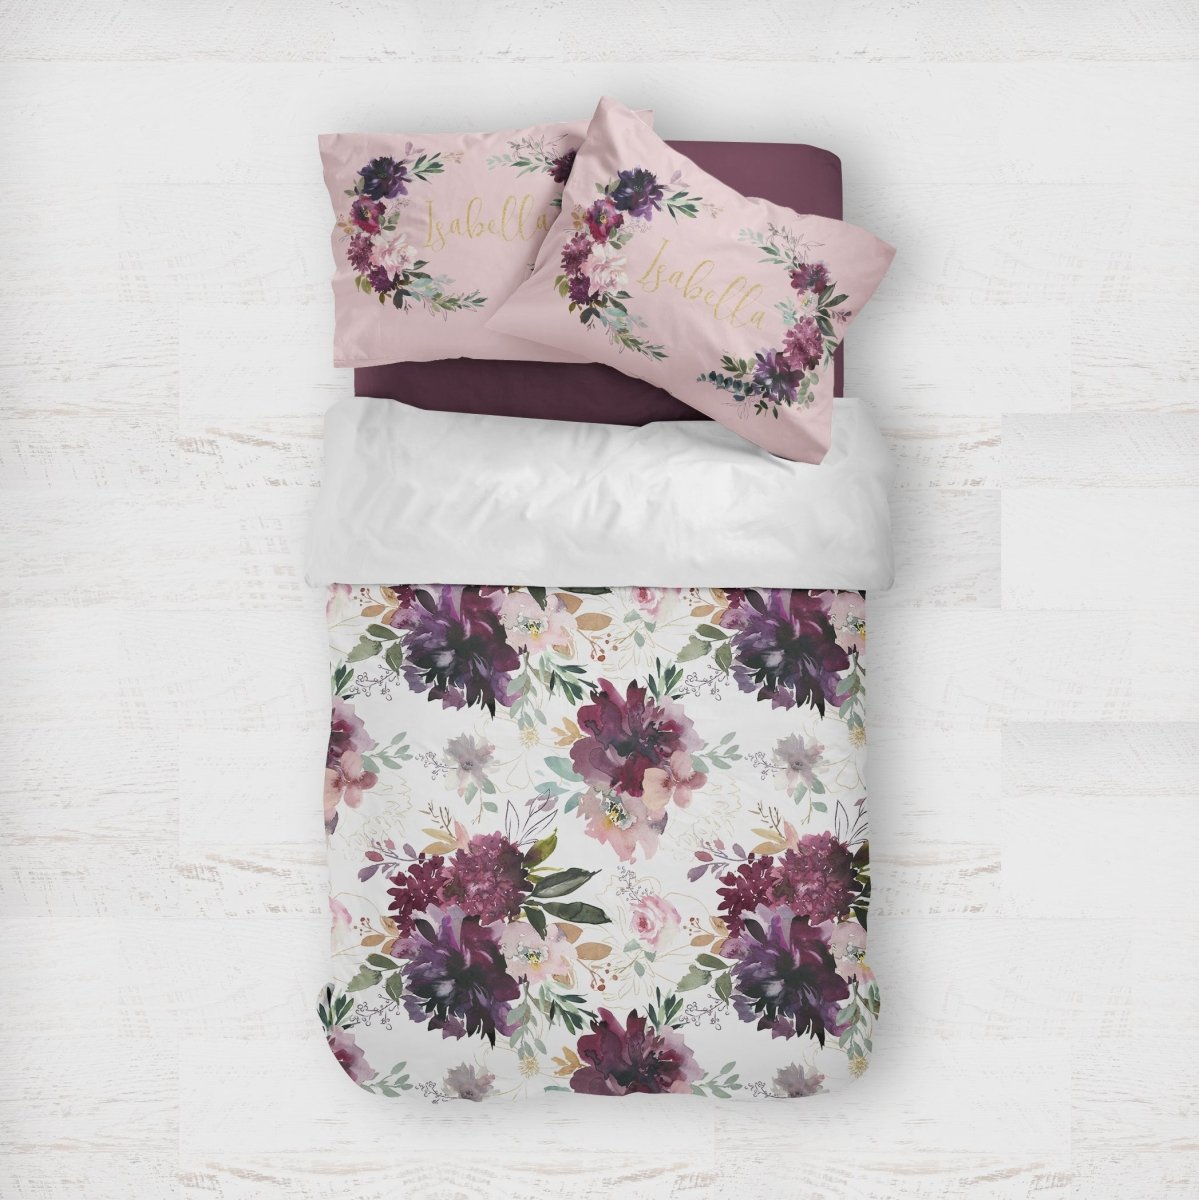 Whisper Floral Kids Bedding Set (Comforter or Duvet Cover) - gender_girl, text, Theme_Floral